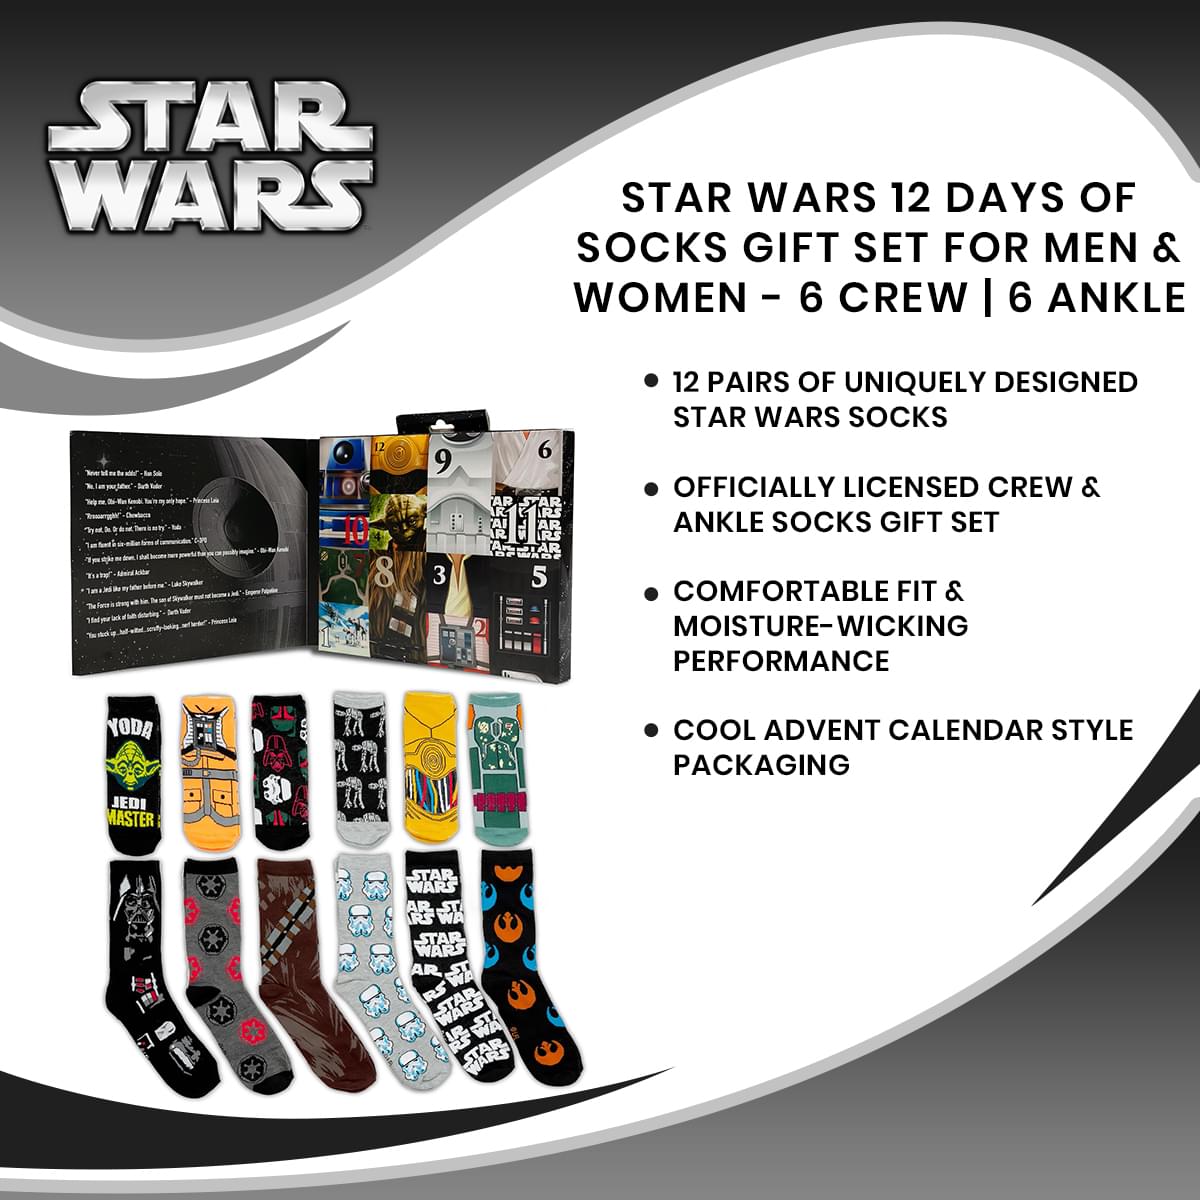 Star Wars 12 Days of Socks Gift Set for Men & Women - 6 Crew | 6 Ankle